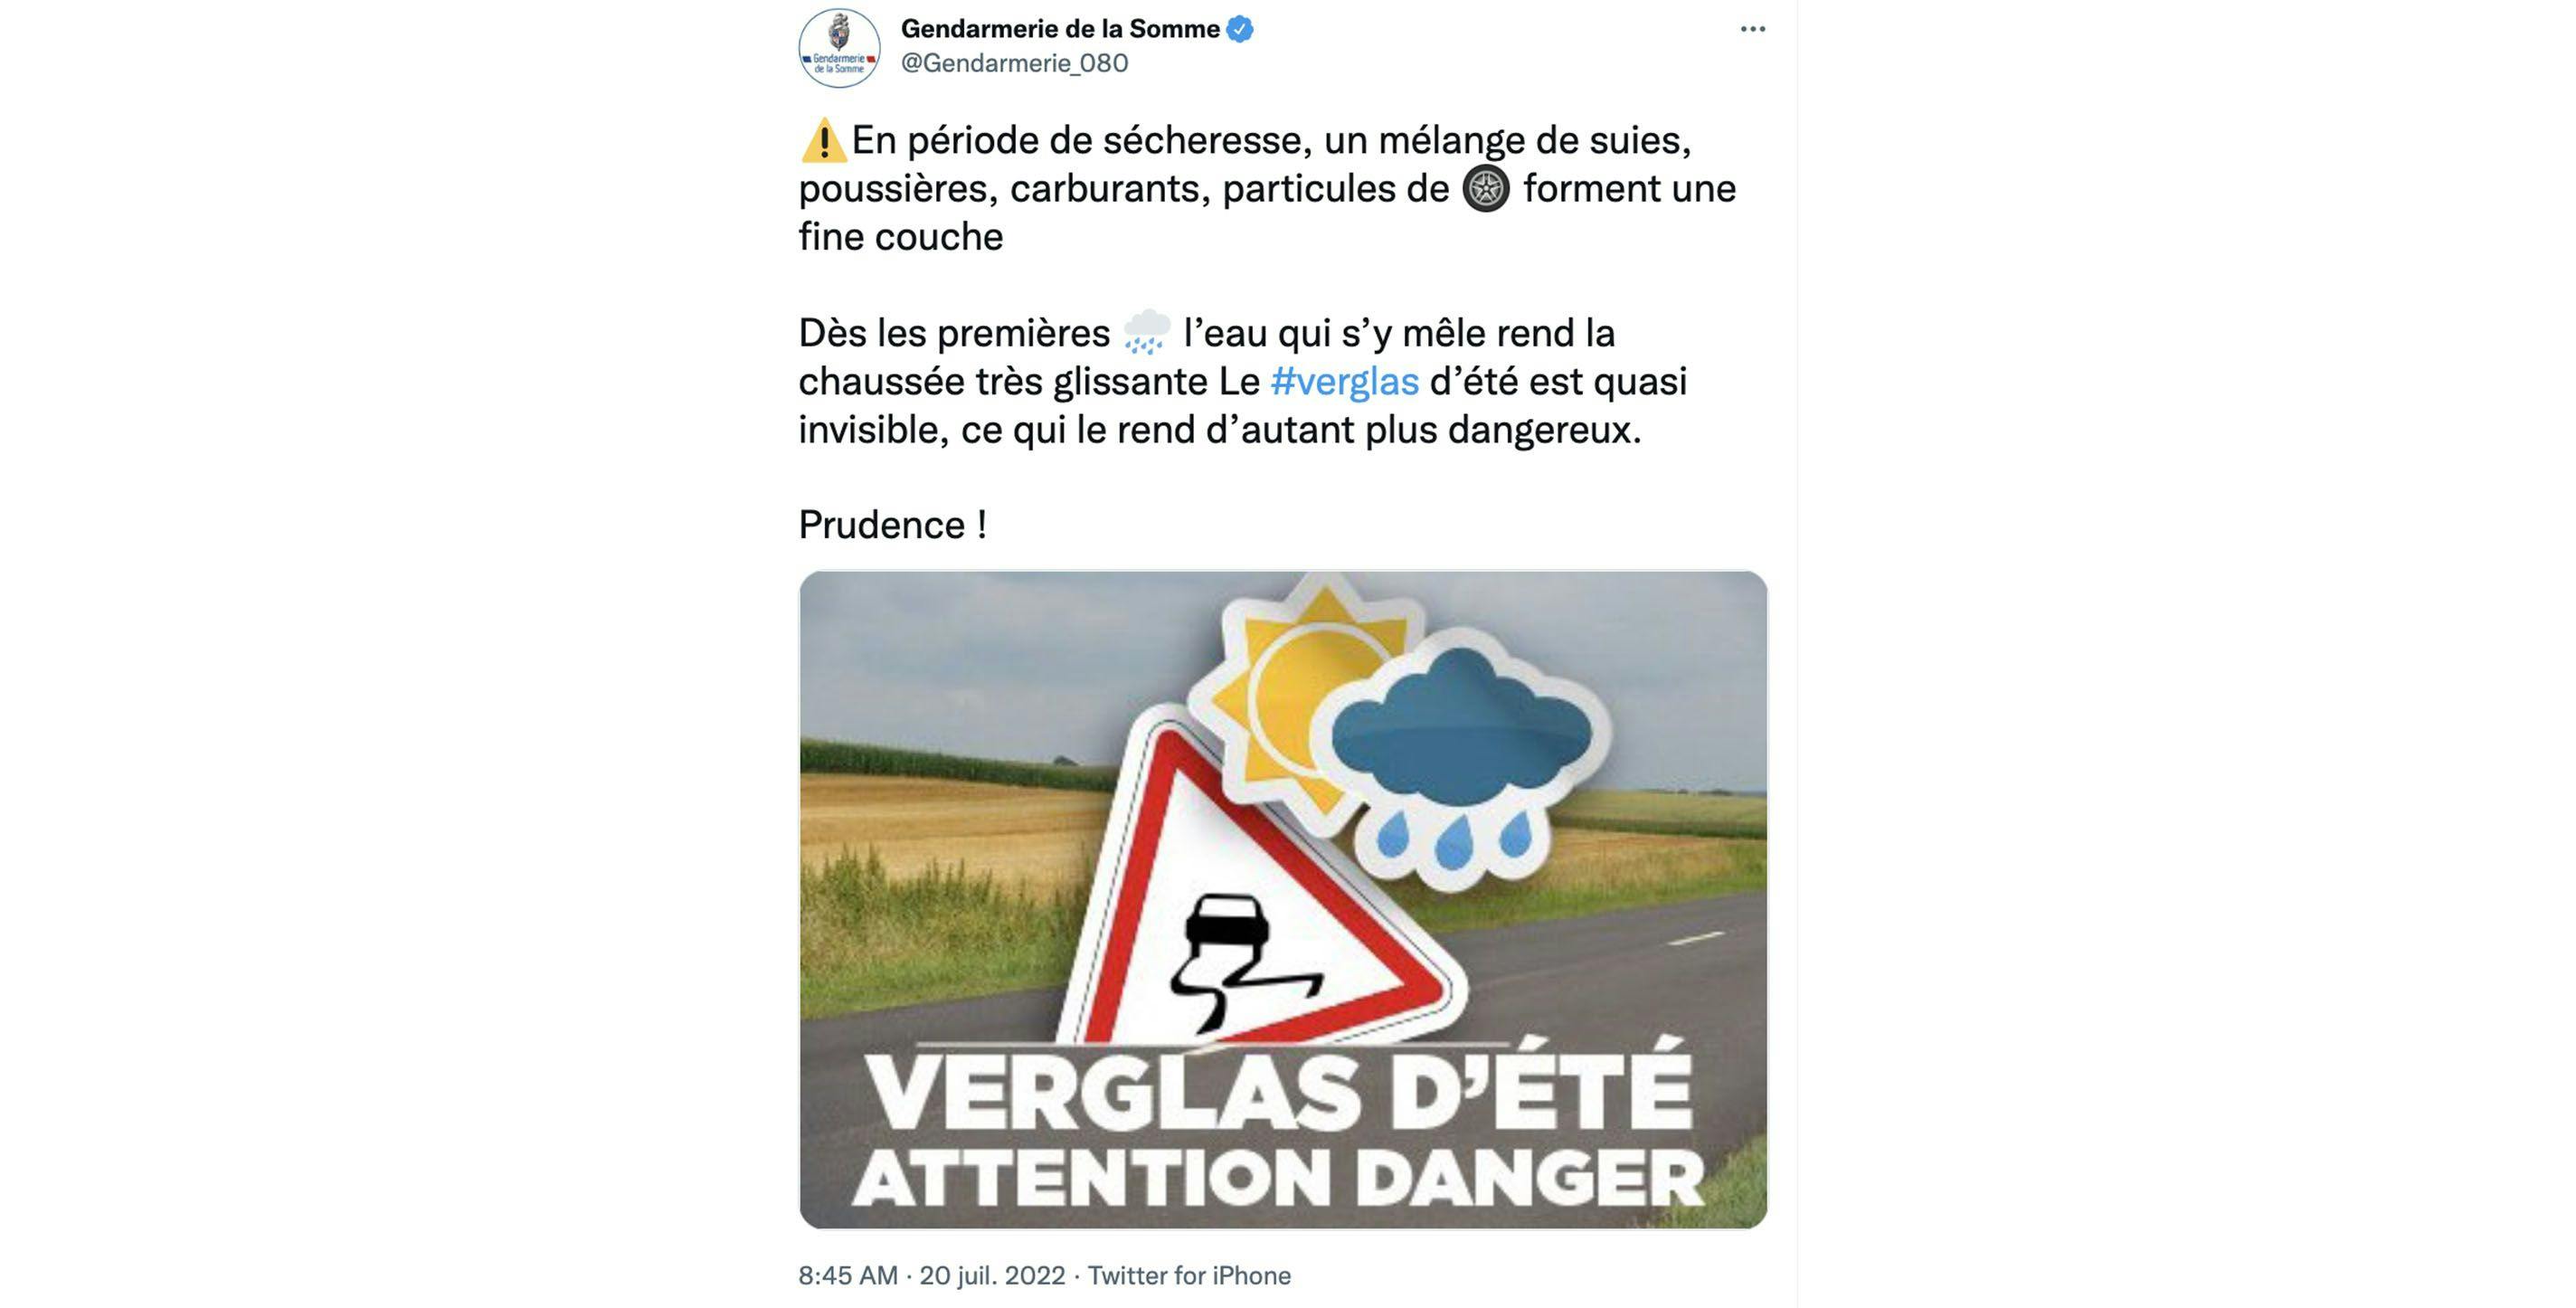 Tweet de la Gendarmerie de la Somme ©Twitter